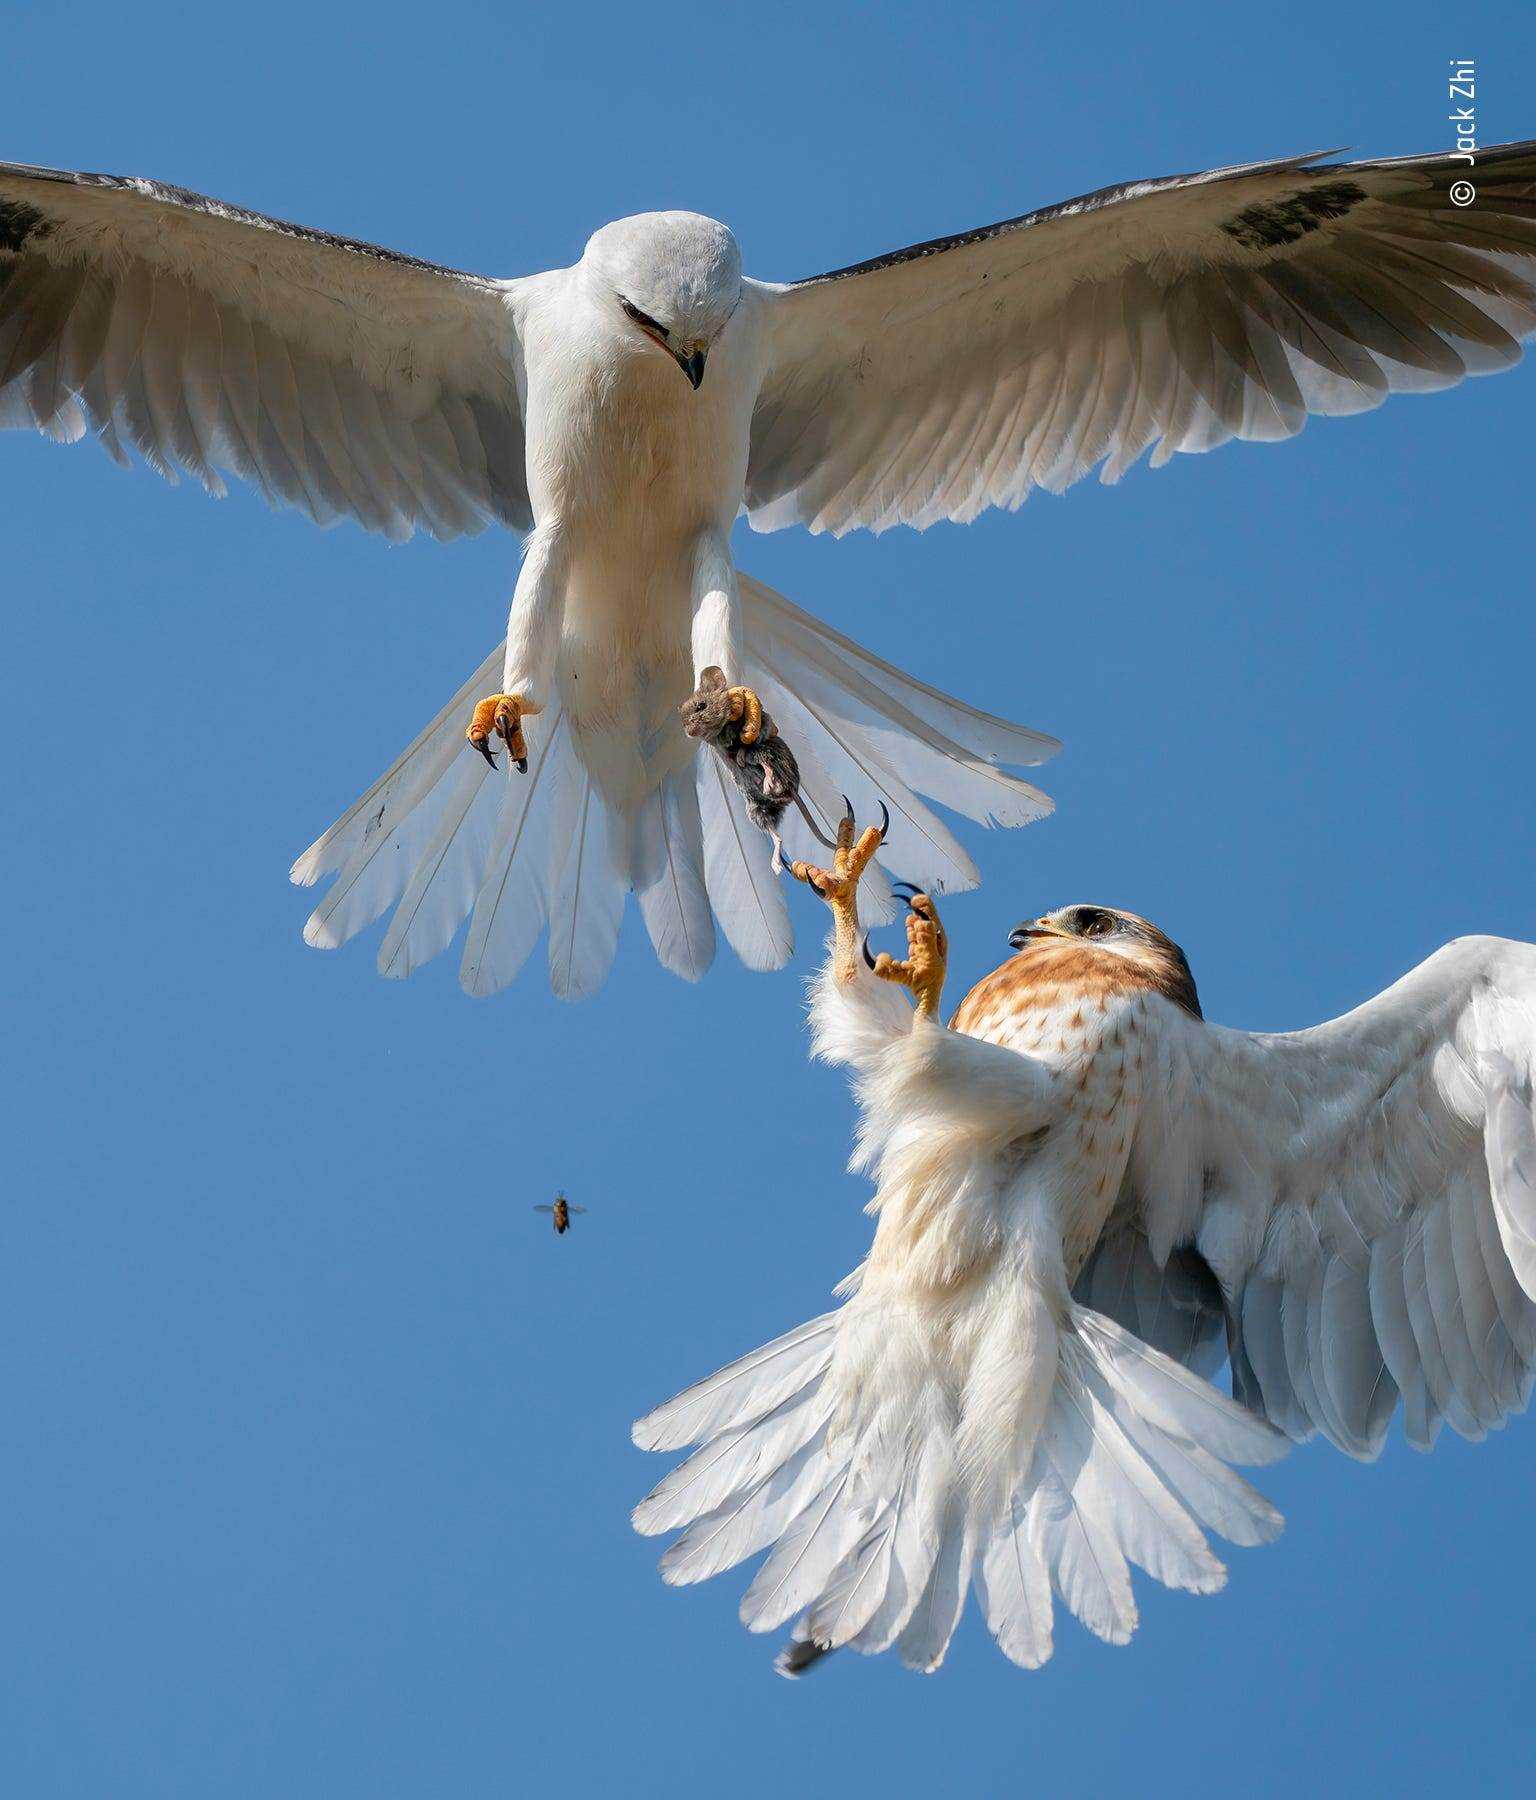 weißer Vogel mit ausgestreckten Flügeln in der Luft hält die Maus in der Klaue, während ein kleinerer Vogel mit braunen Sprenkeln die Klauen erreicht, um die Maus zu nehmen